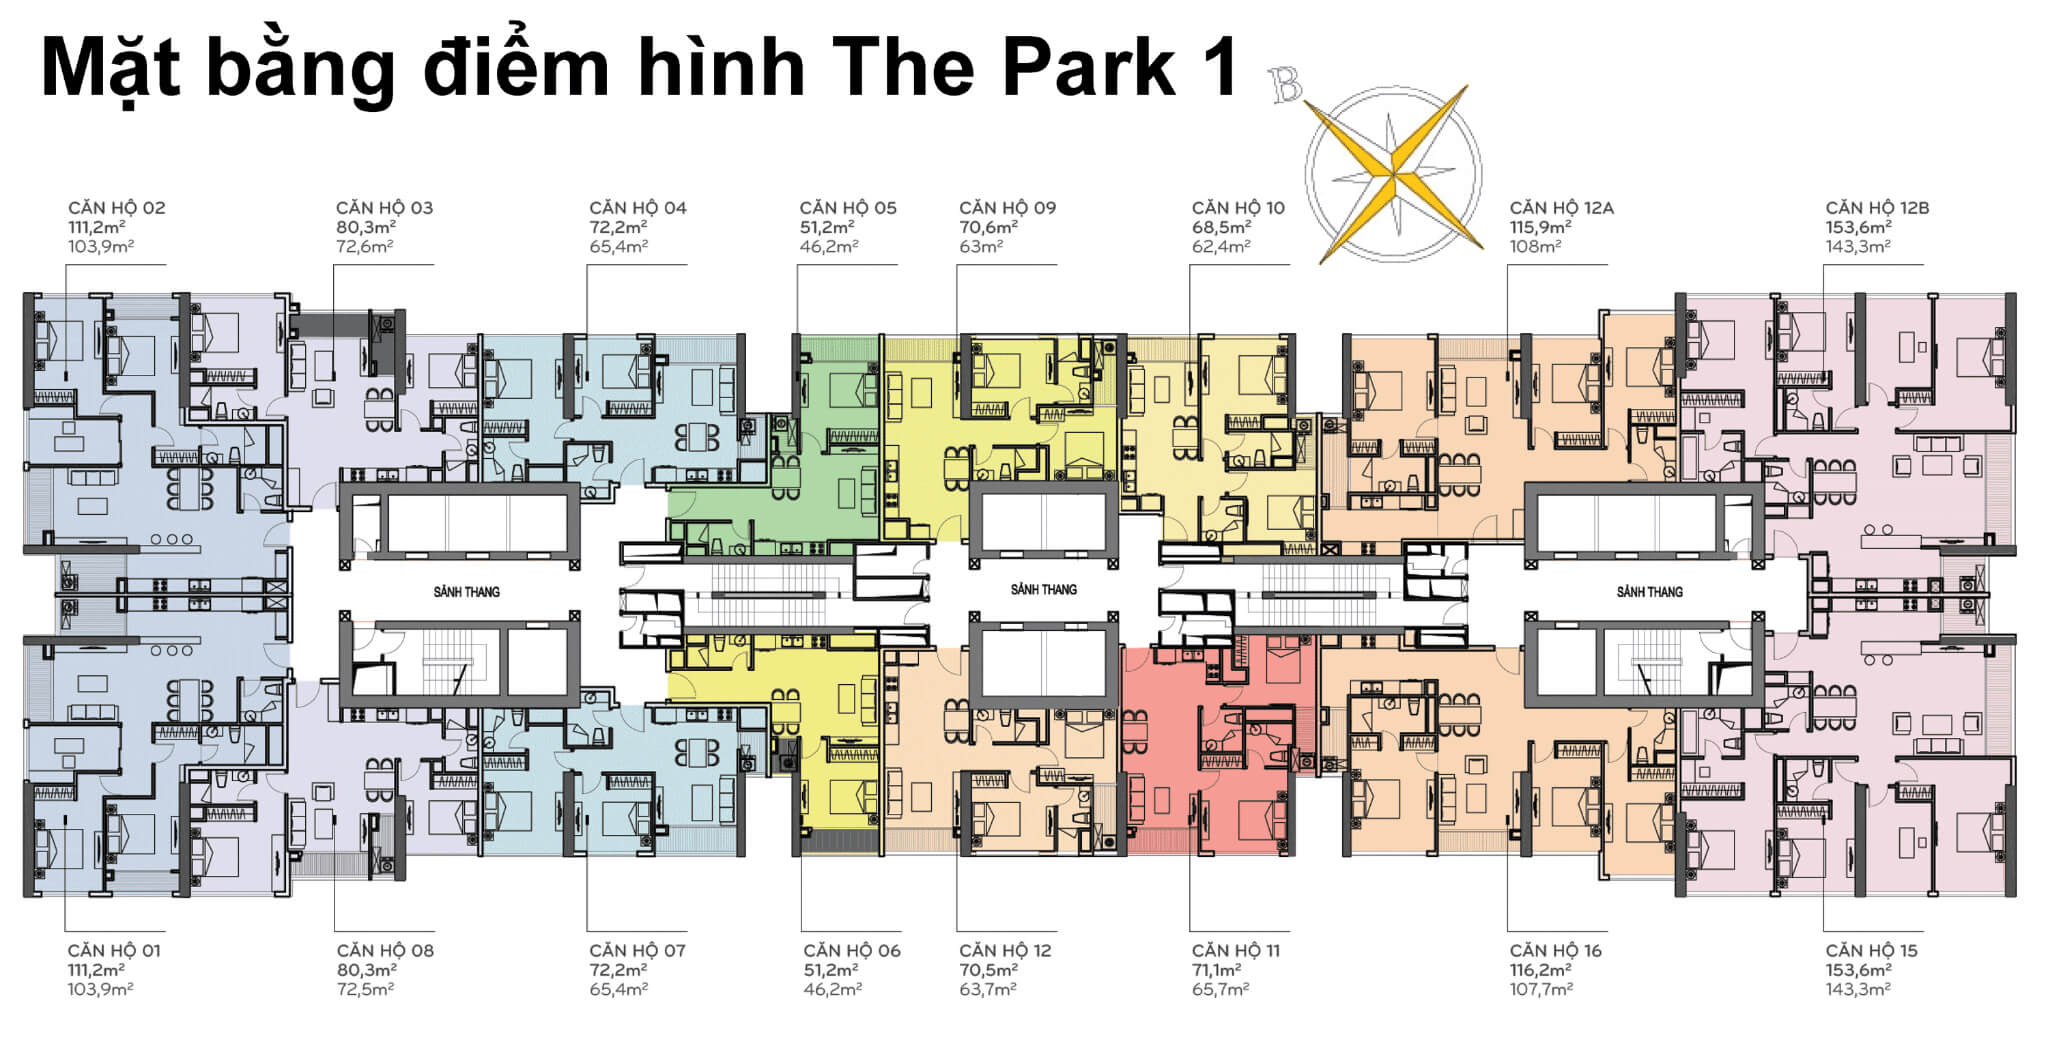 Mặt bằng layout tòa The Park 1 tại Vinhomes Central Park